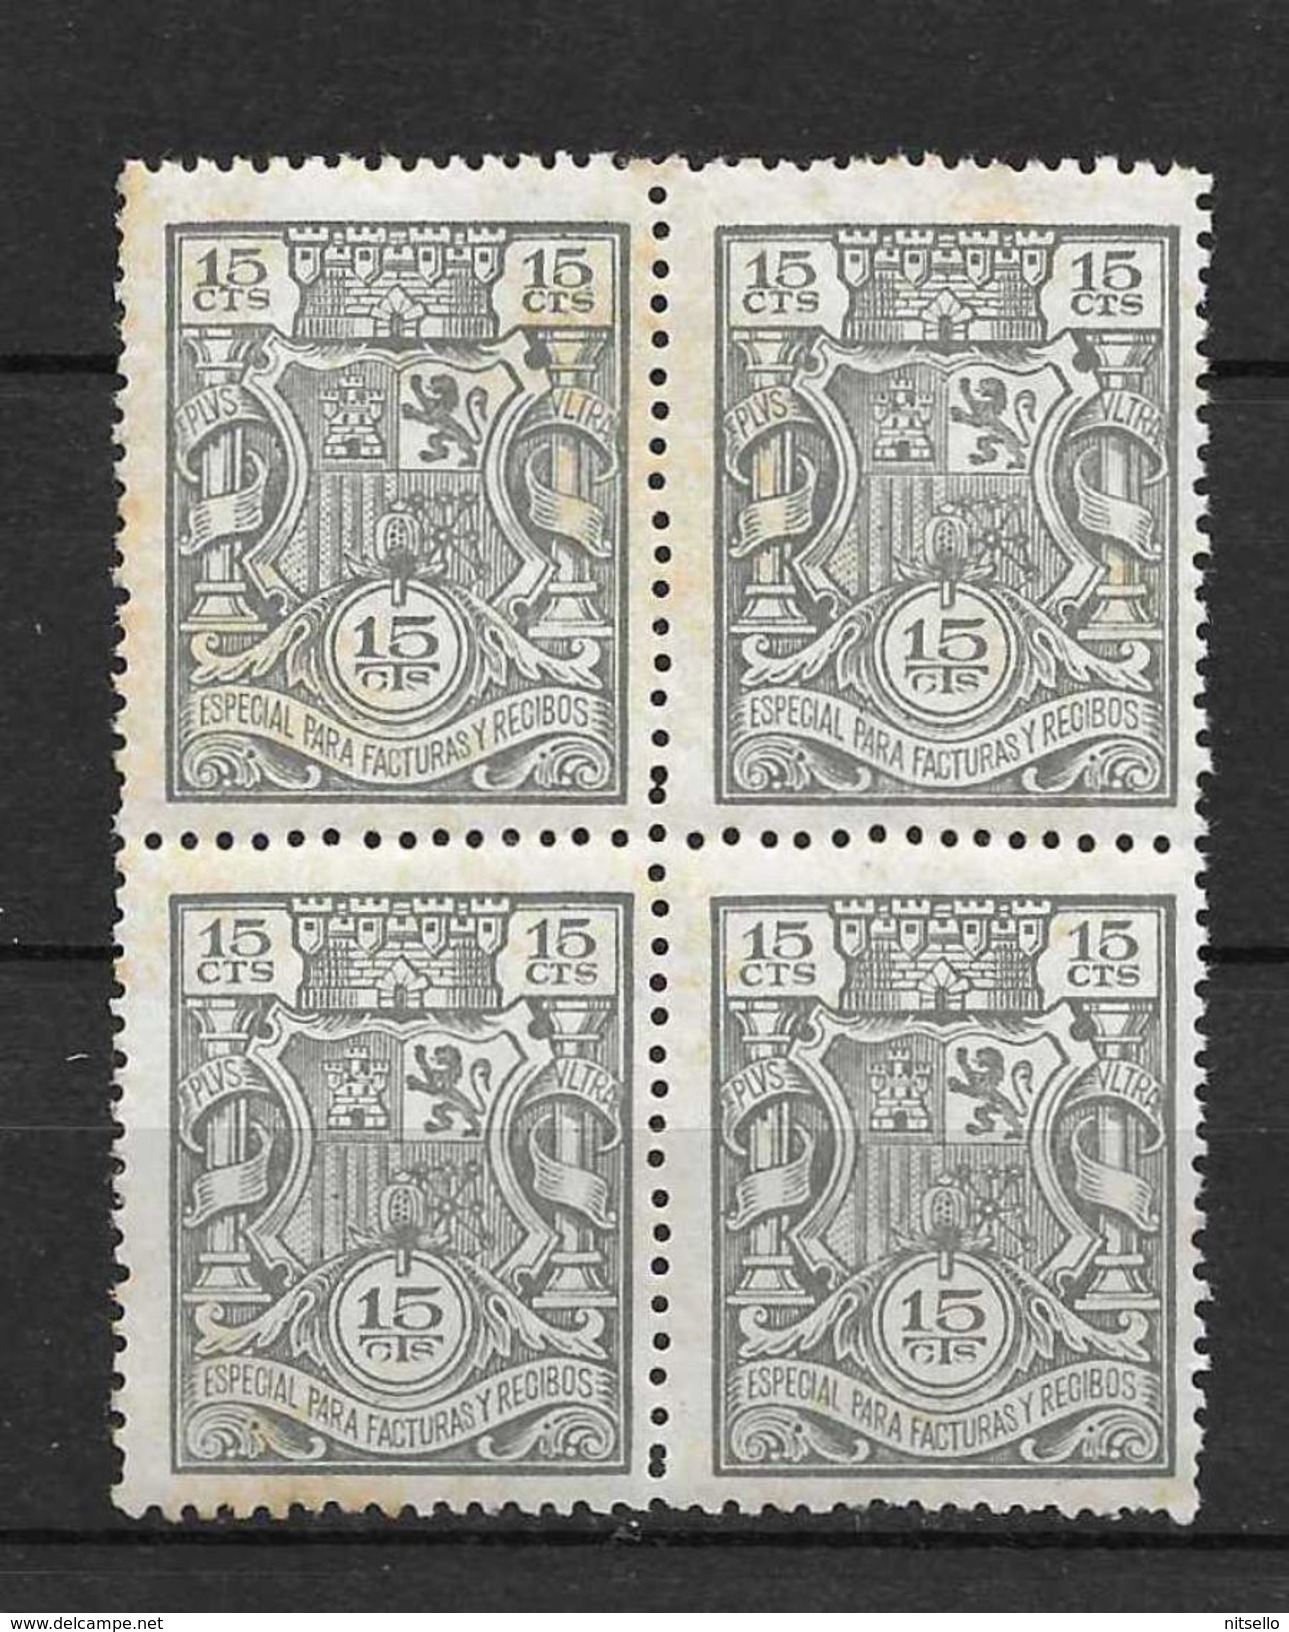 LOTE 1891 D  ///  ESPAÑA  SELLOS FISCALES  -  ESPECIAL FACTURAS Y RECIBOS **MNH - Revenue Stamps